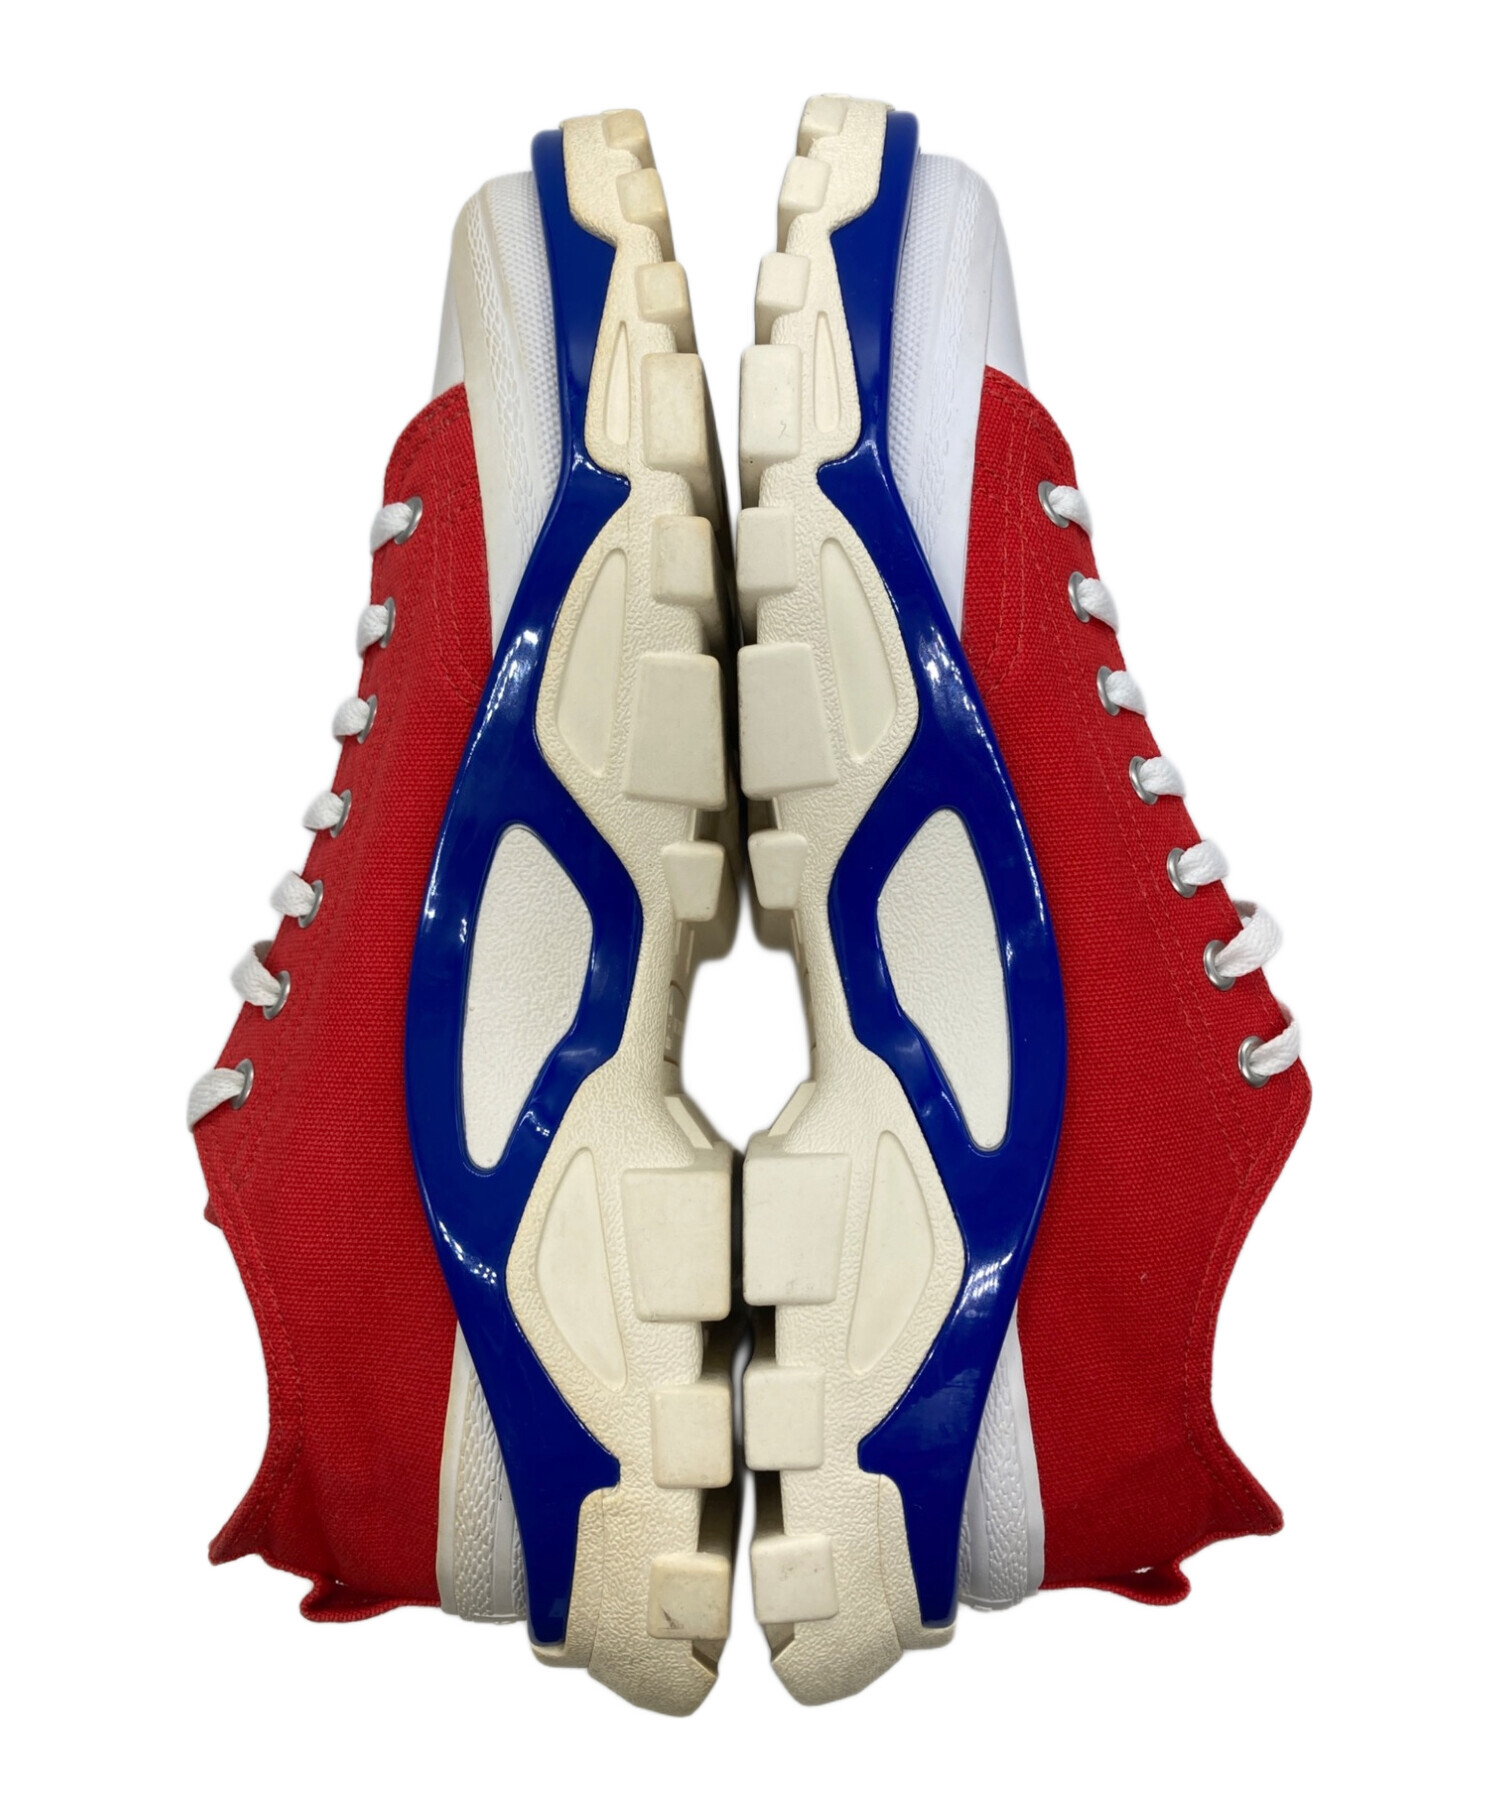 adidas (アディダス) RAF SIMONS (ラフシモンズ) DETROIT RUNNER/デトロイトランナー ホワイト×レッド  サイズ:26.5cm